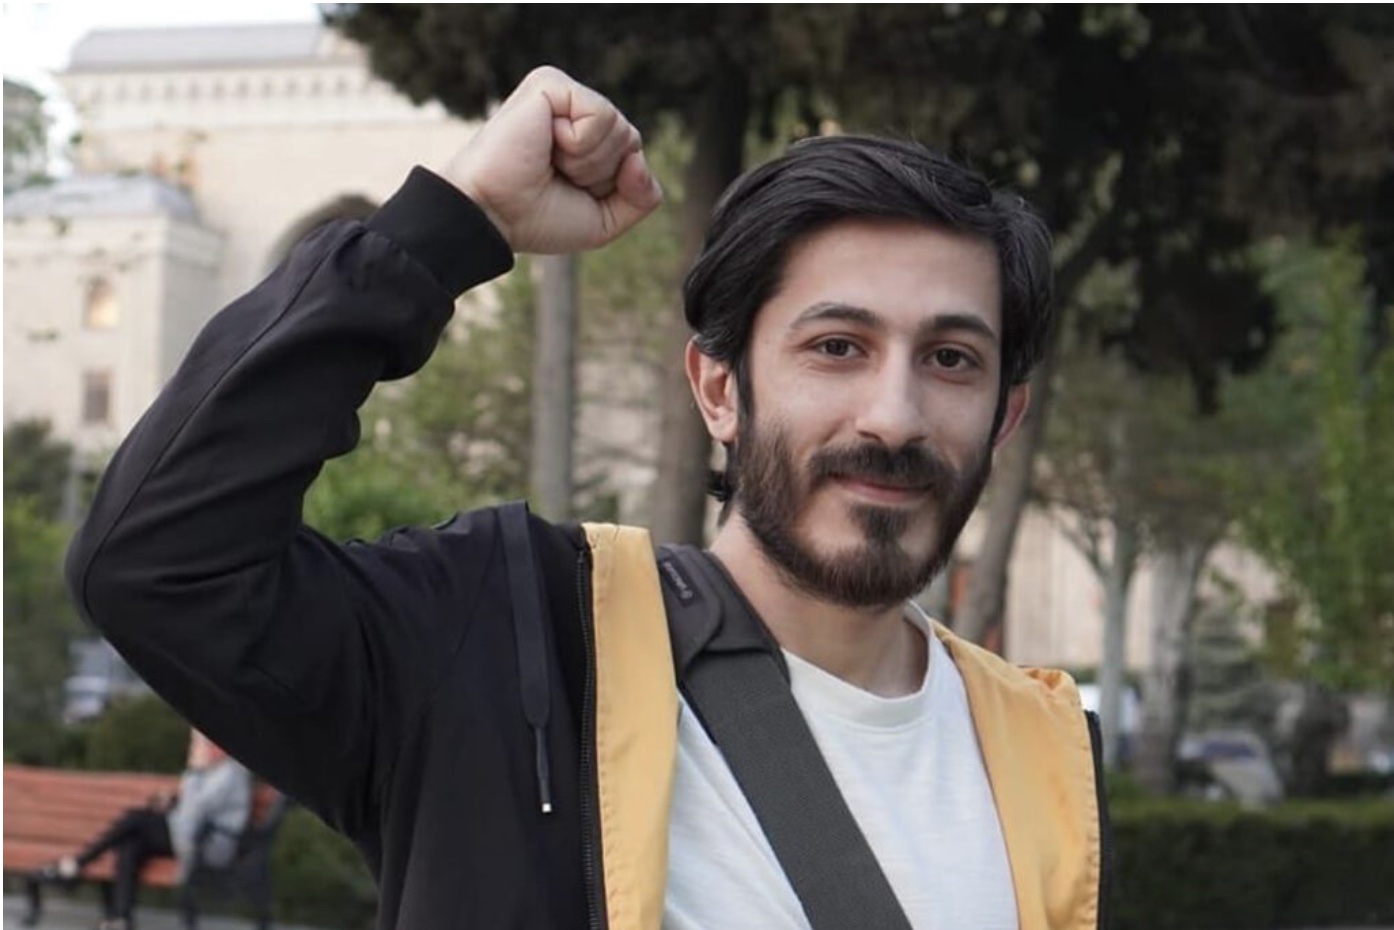 Azerbeycanlı işçi hakları aktivistine ‘işkence ve gözaltı’